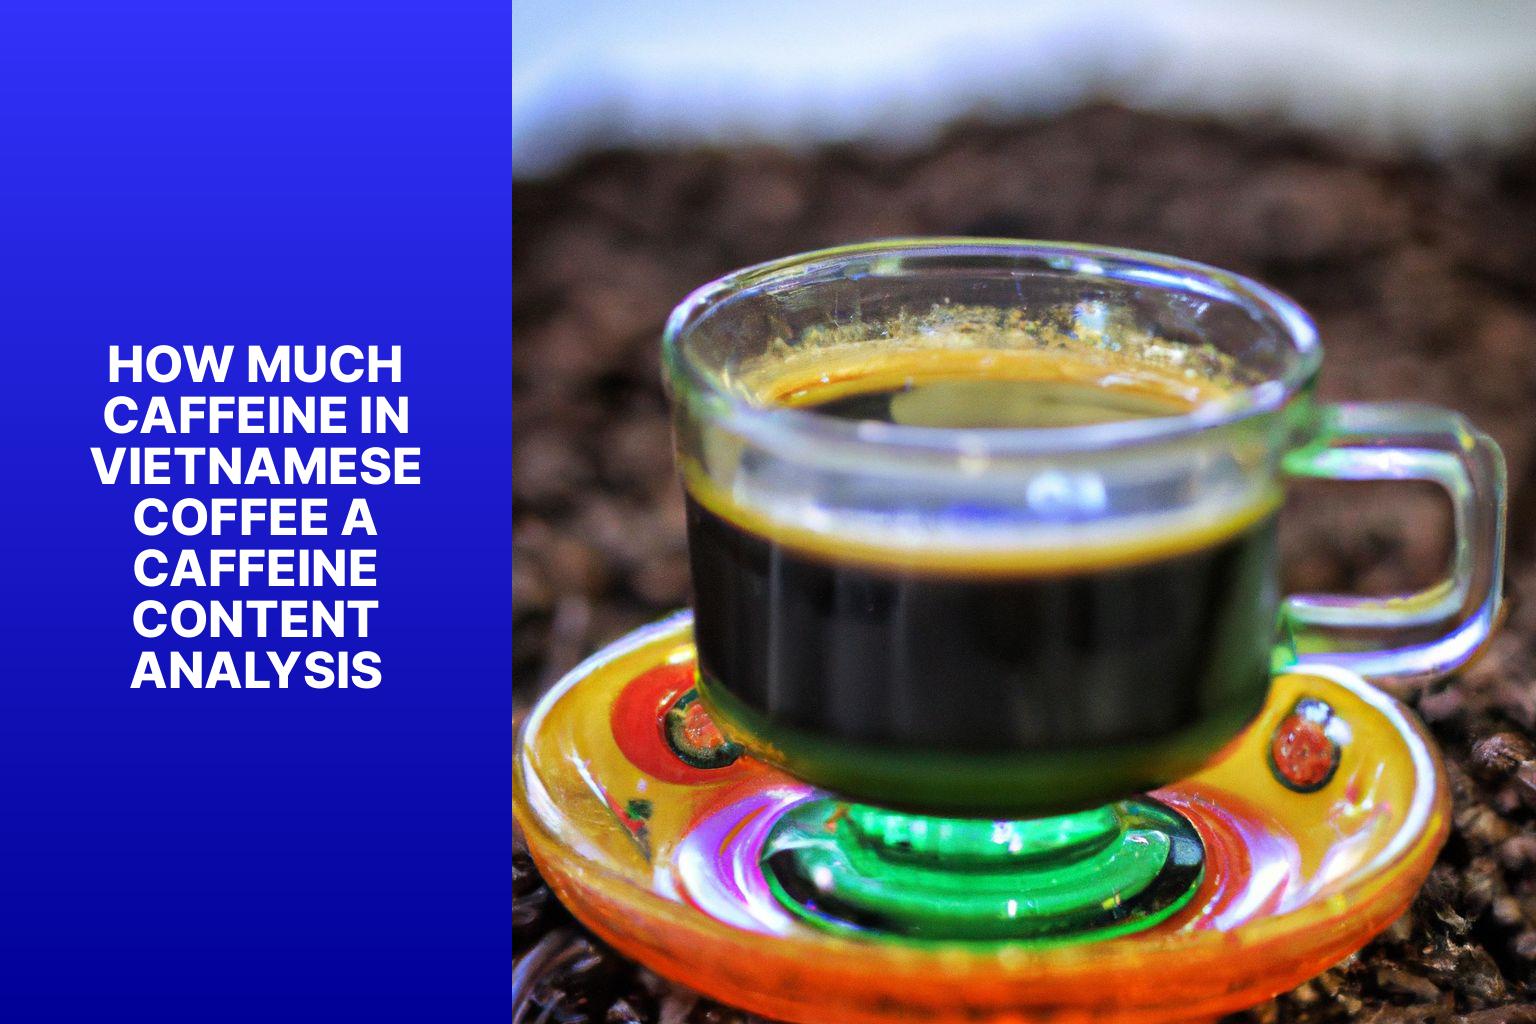 How Much Caffeine in Vietnamese Coffee? A Caffeine Content Analysis